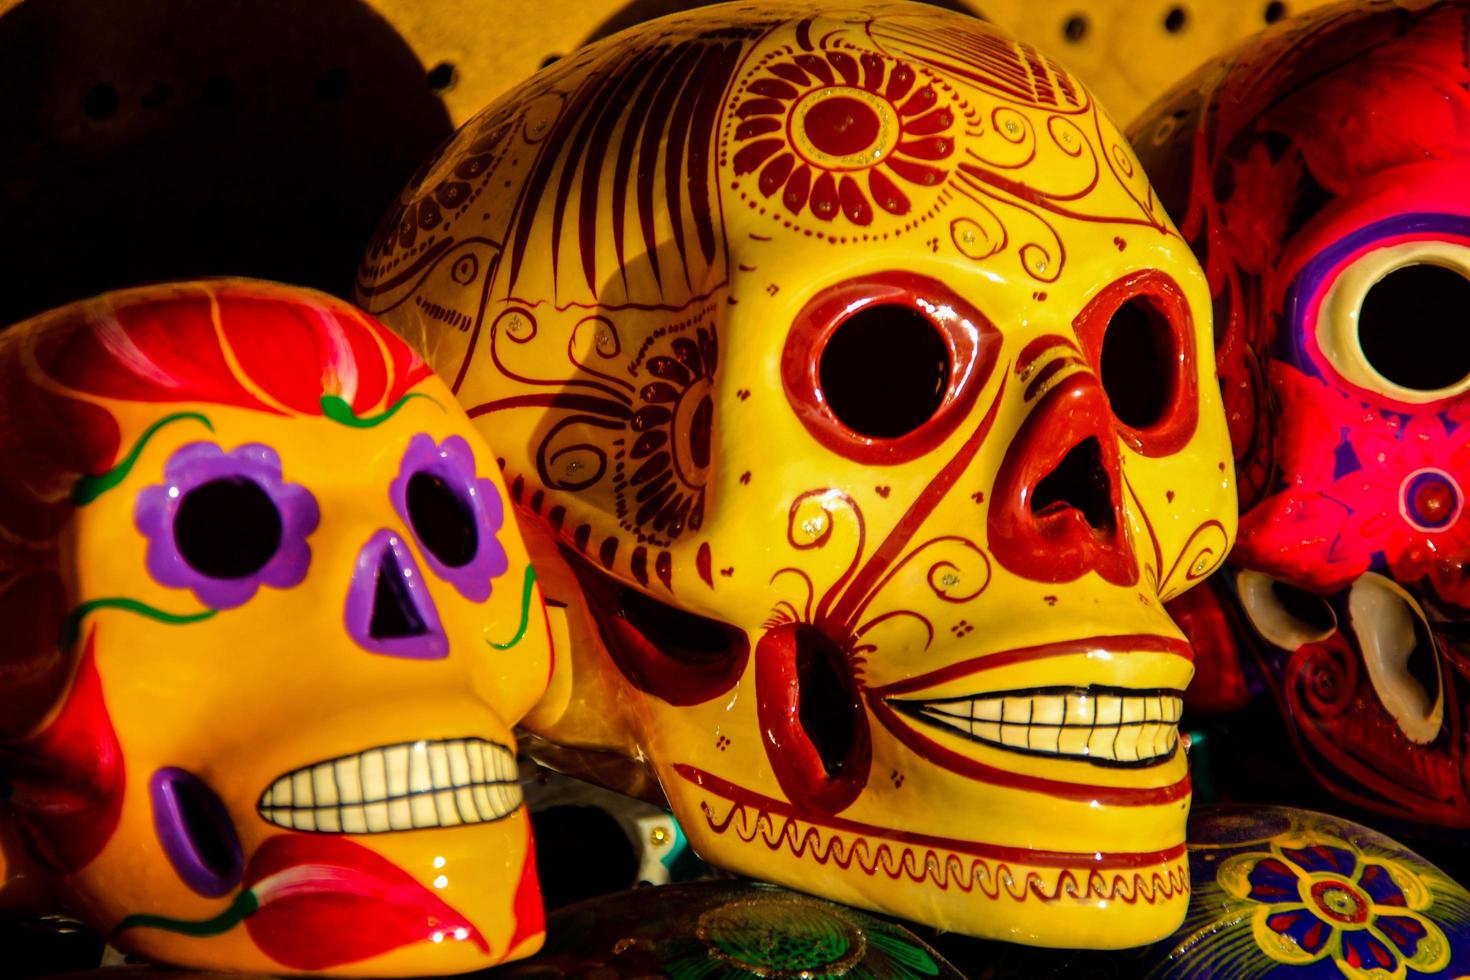 cabo san lucas, messico, 8 agosto 2014 - calacas, giorno del cranio di legno delle maschere morte sul mercato a cabo san lucas, messico. le maschere sono simboli tipici che rappresentano calacas - scheletri. foto